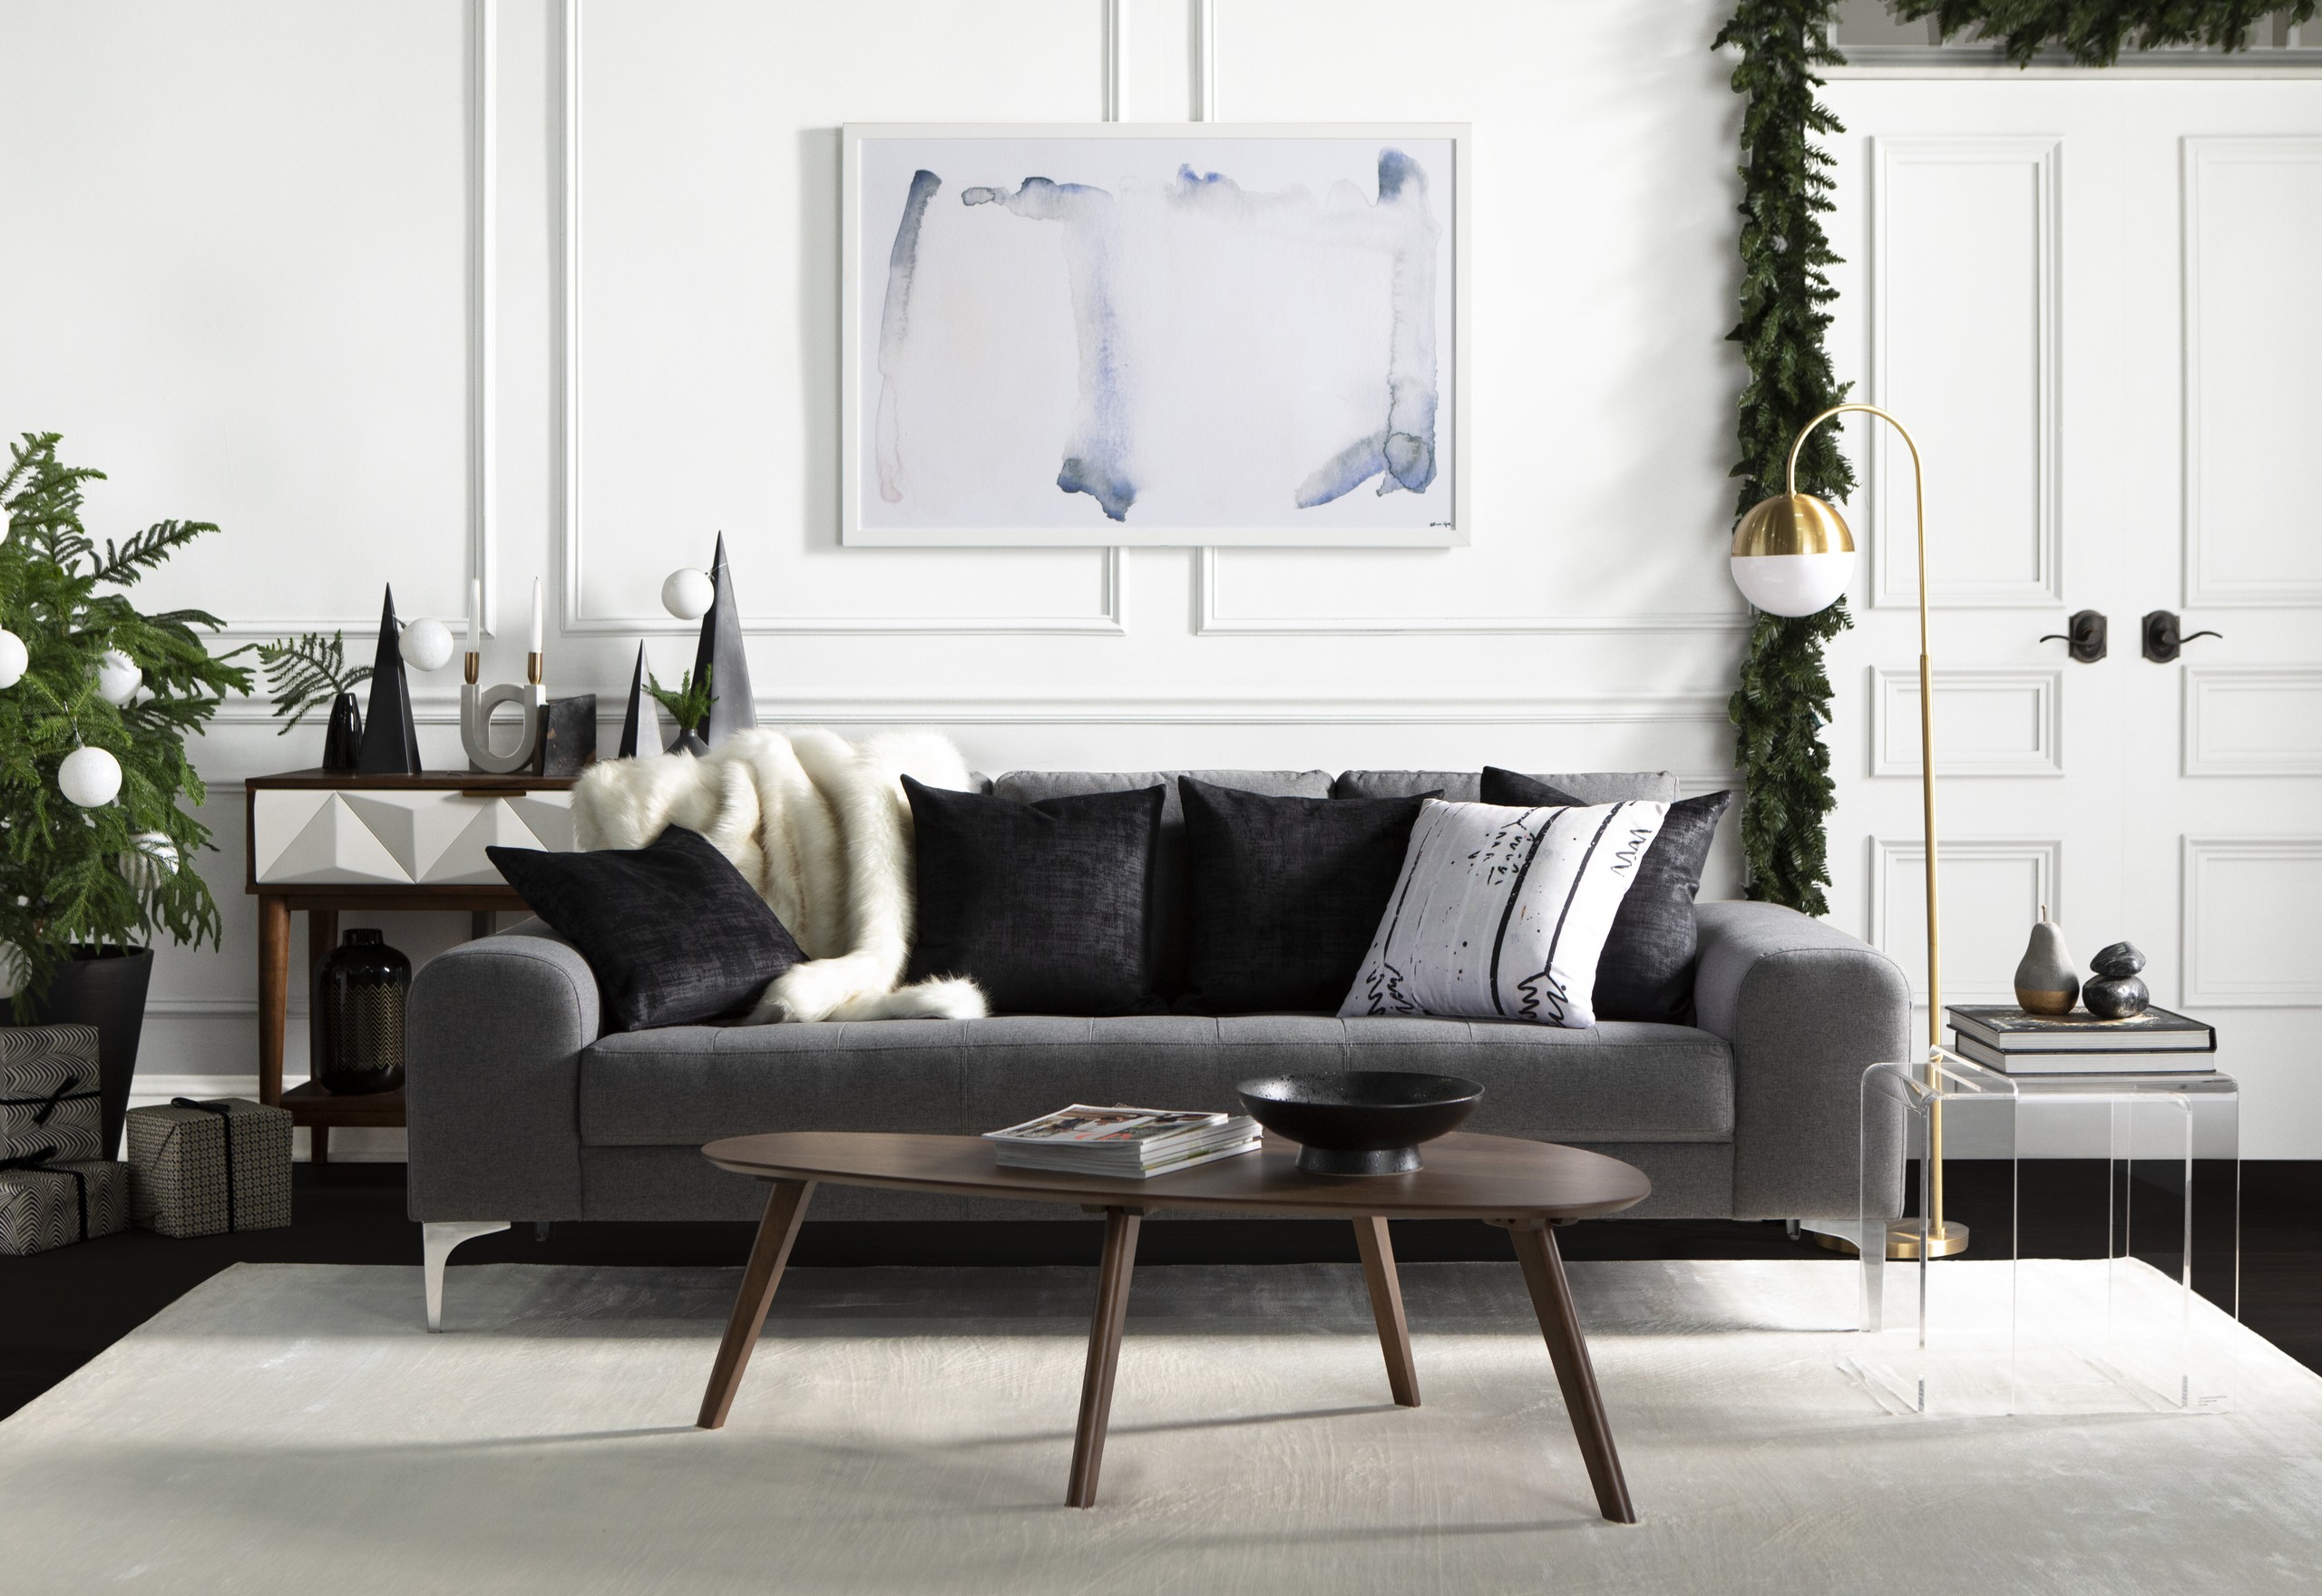 Neutral Tones Modern Living Room for Christmas